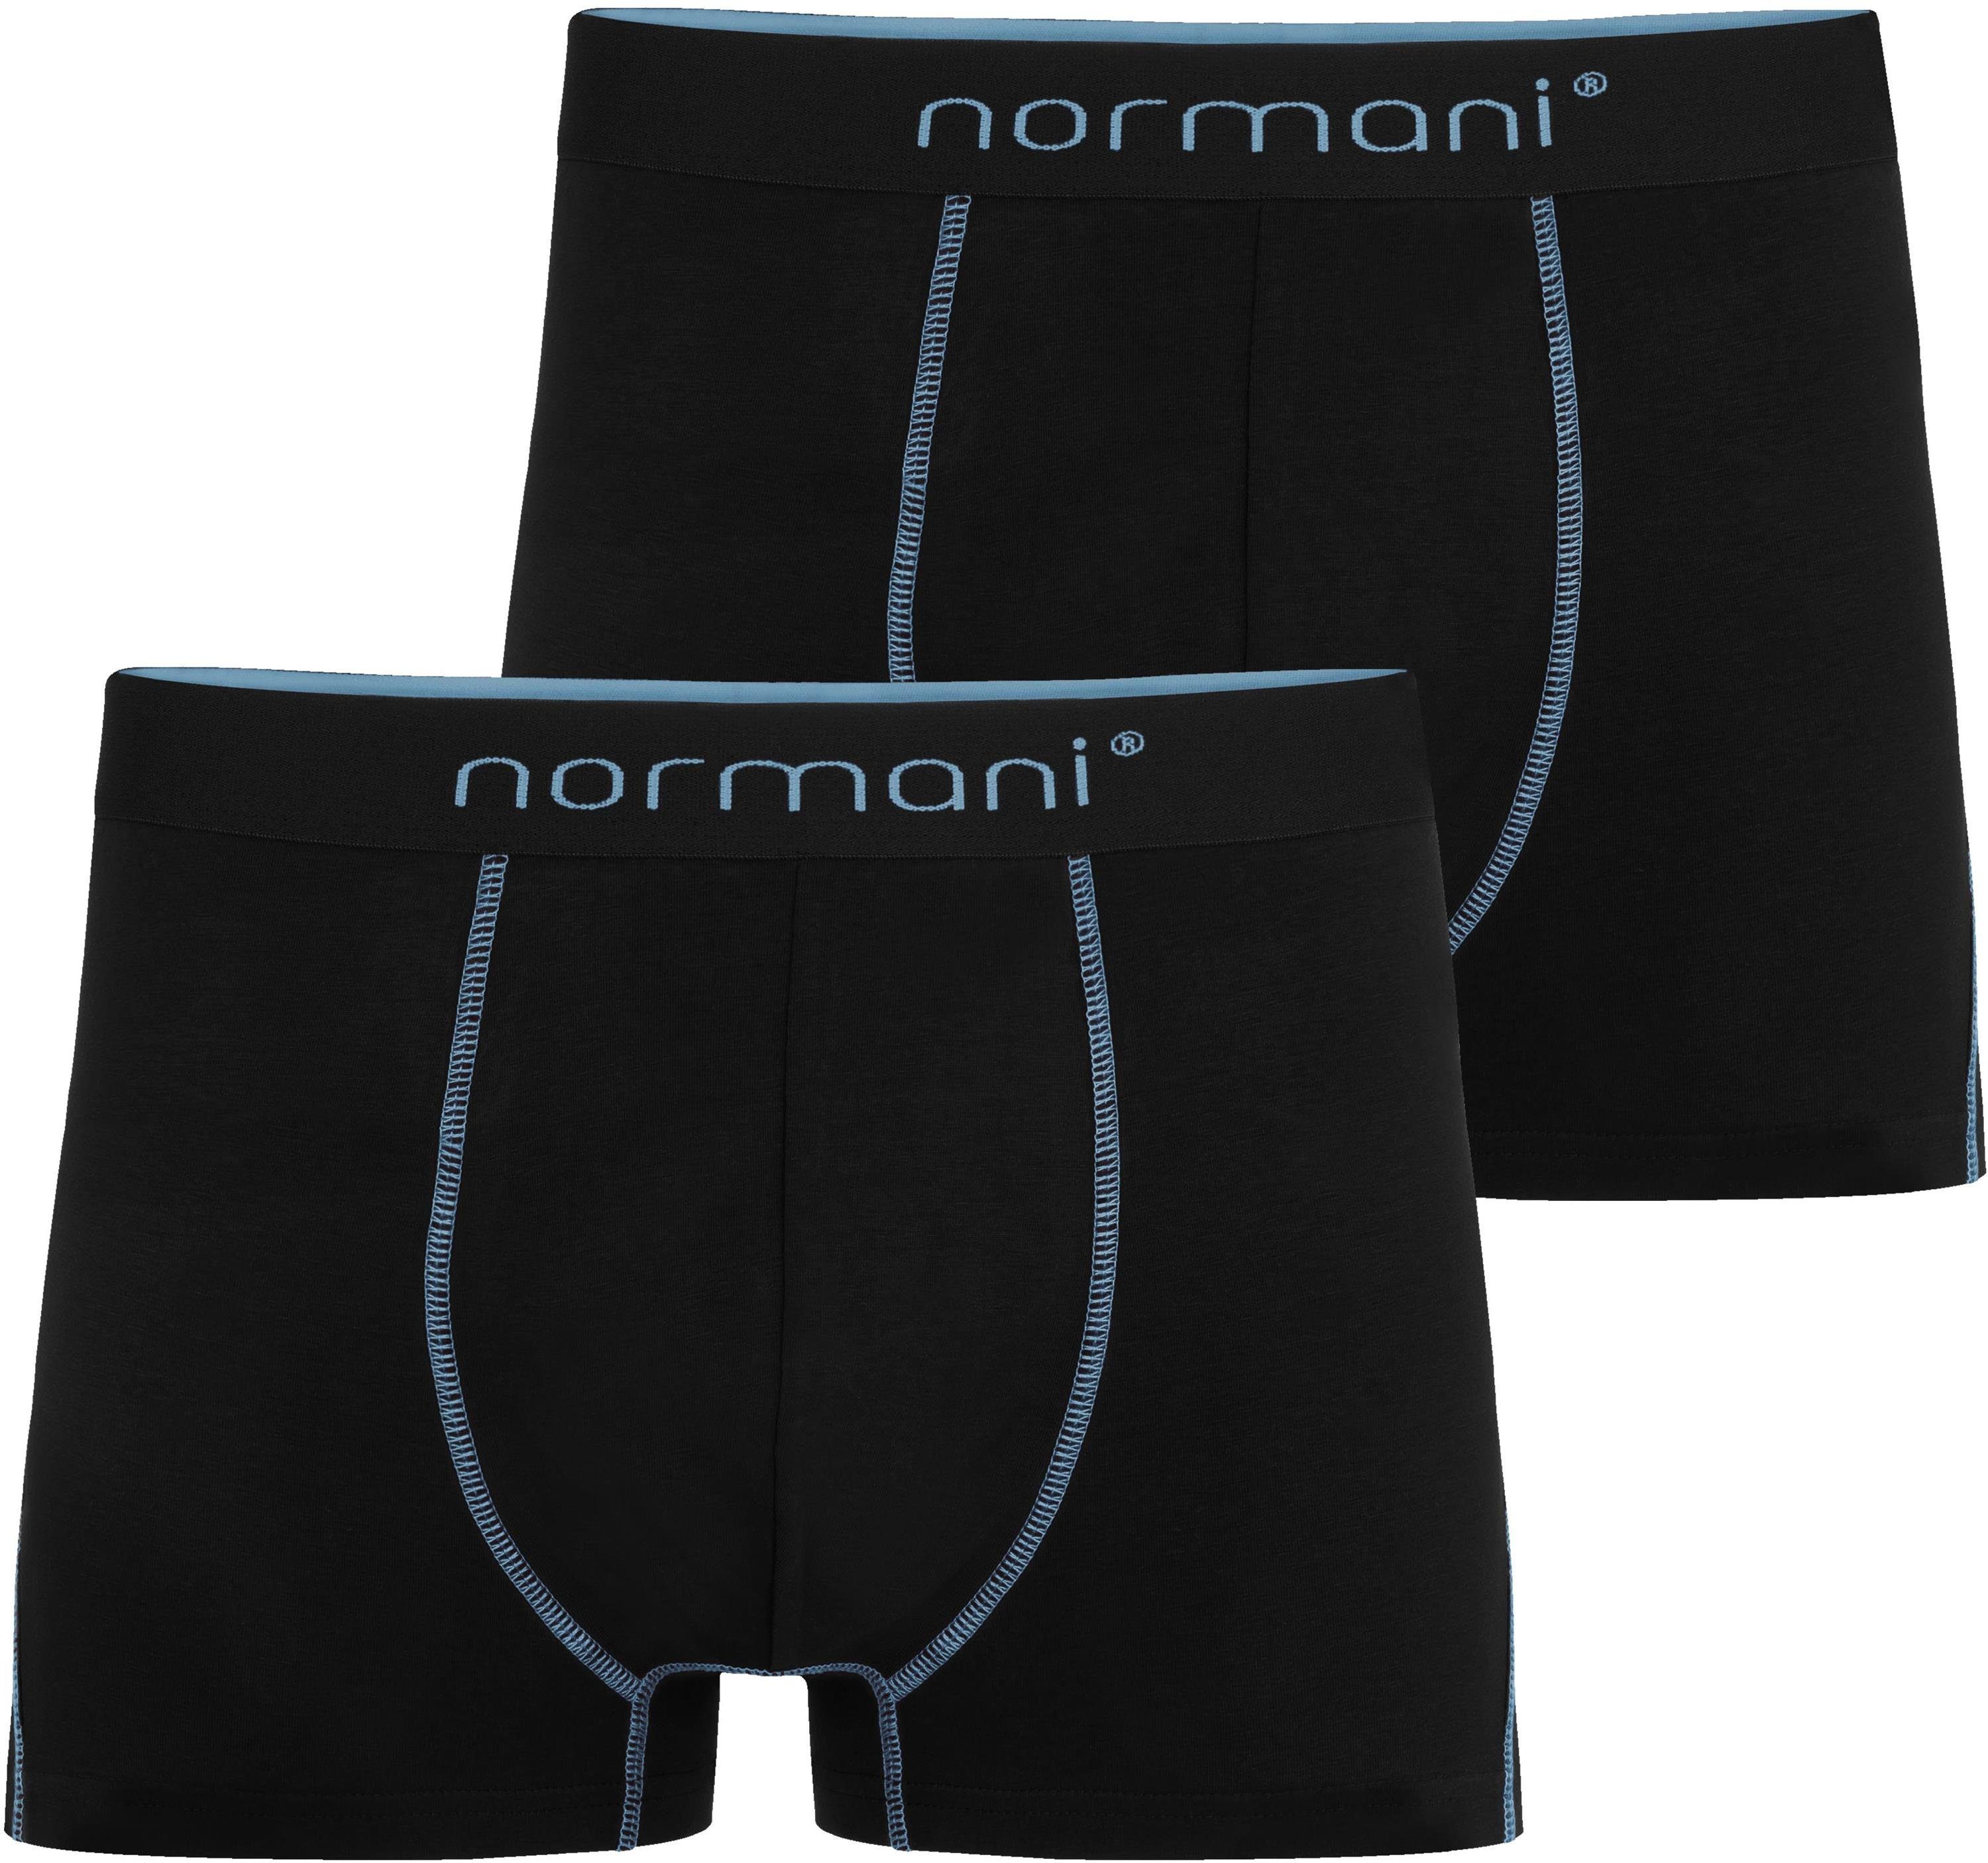 Hellblau für aus Stanley Baumwolle Männer Herren Unterhose atmungsaktiver Boxershorts 2 normani Boxershorts